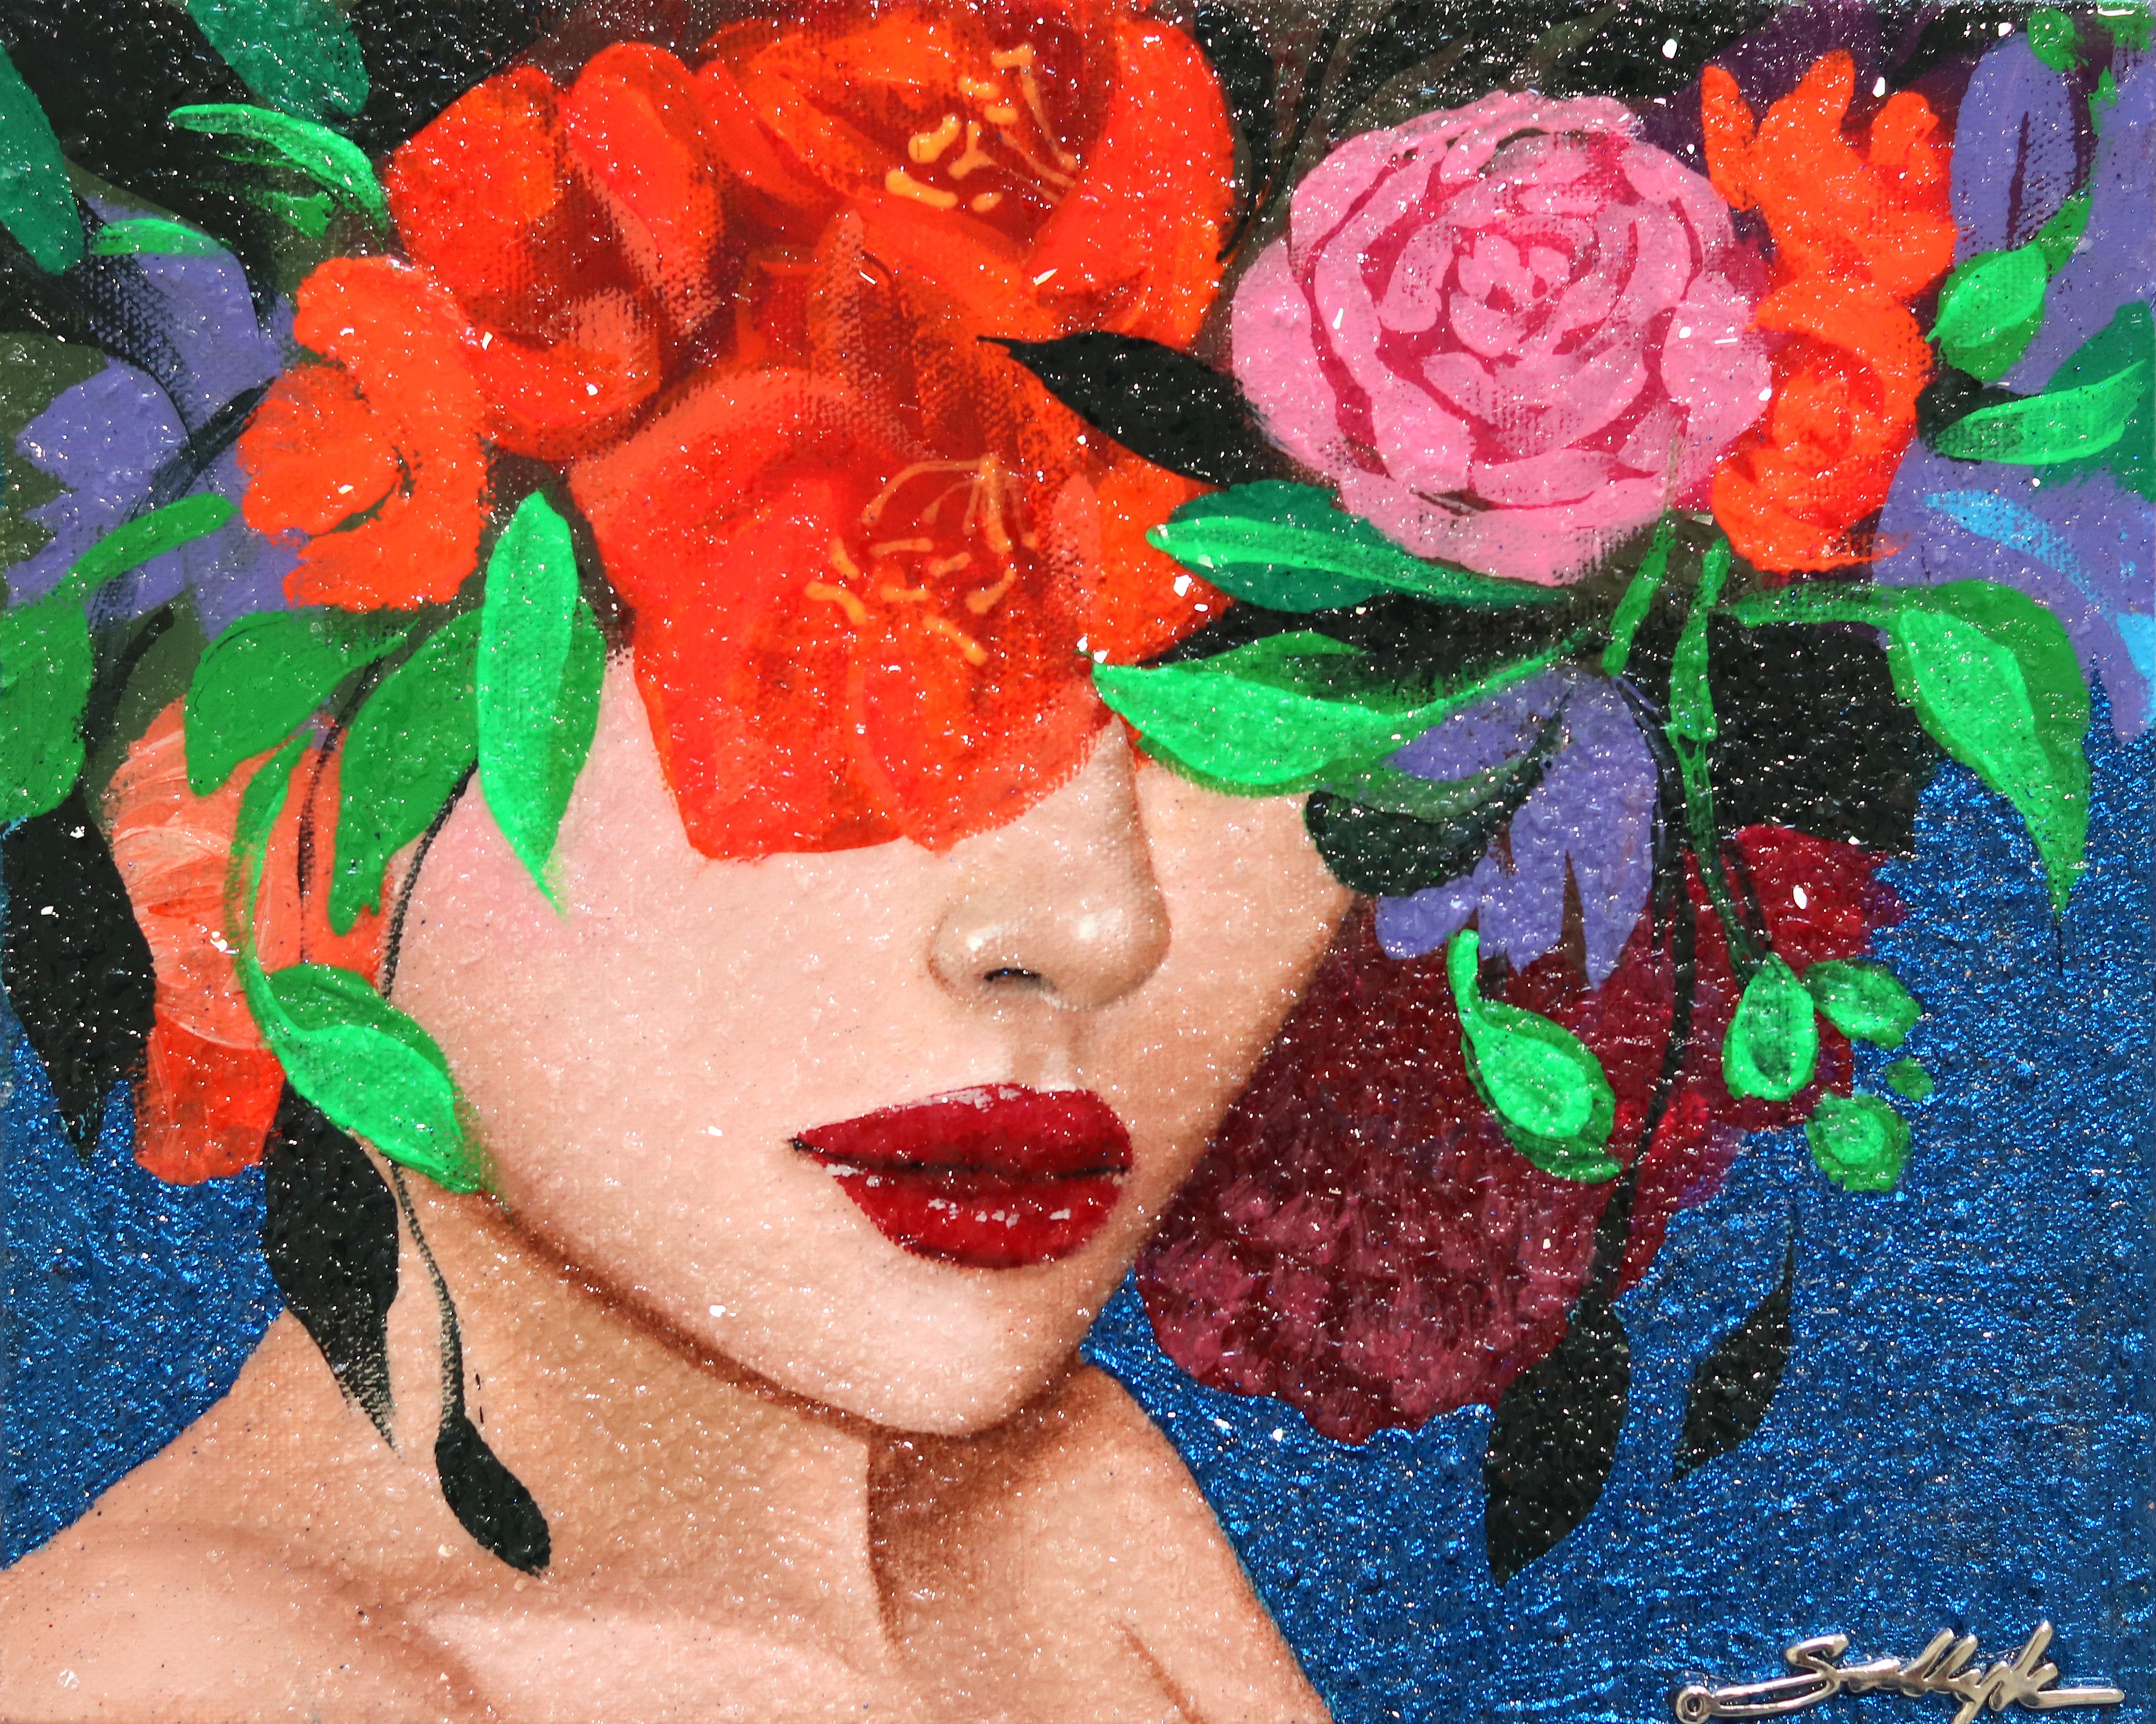 Der Blick auf das Blumenporträt der libanesisch-amerikanischen Künstlerin Sally K. ist verzehrend und ermächtigend. Inspiriert von starken, weiblichen Frauen, schafft sie poppig-realistische Gemälde, die die energiegeladene weibliche Erfahrung